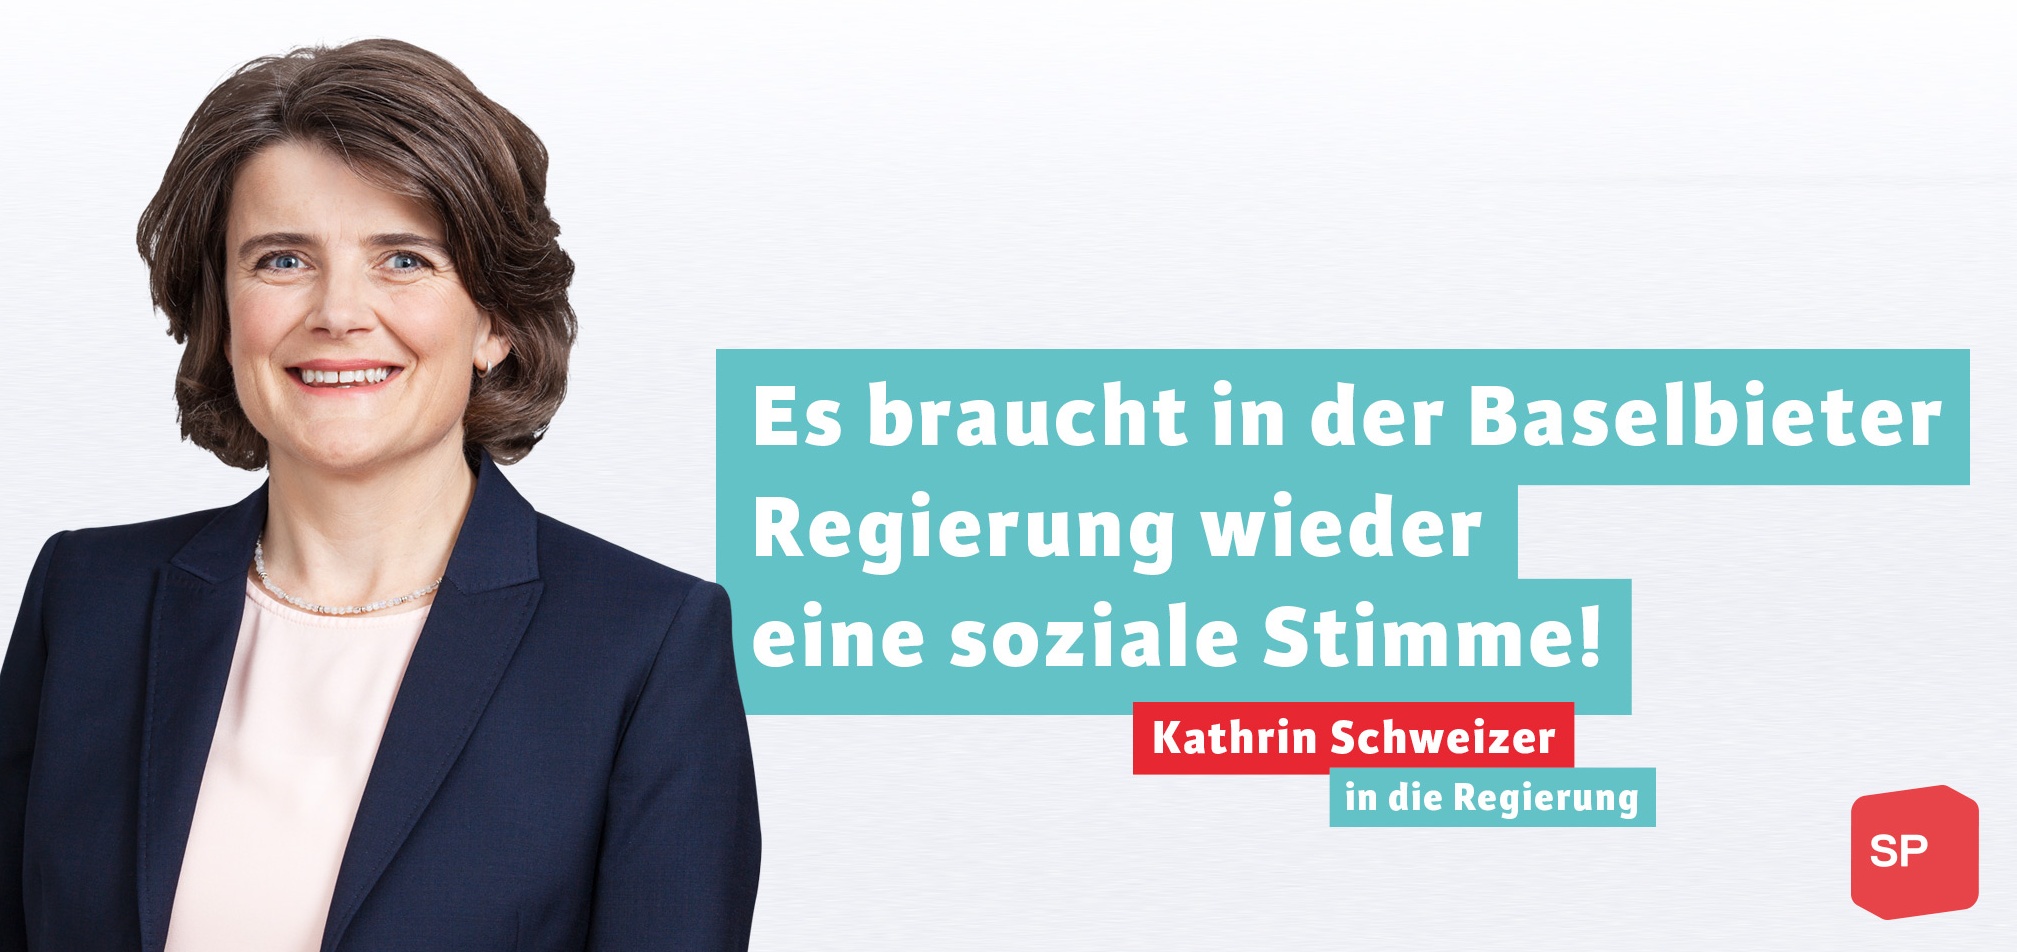 Kathrin Schweizer in den Regierungsrat!